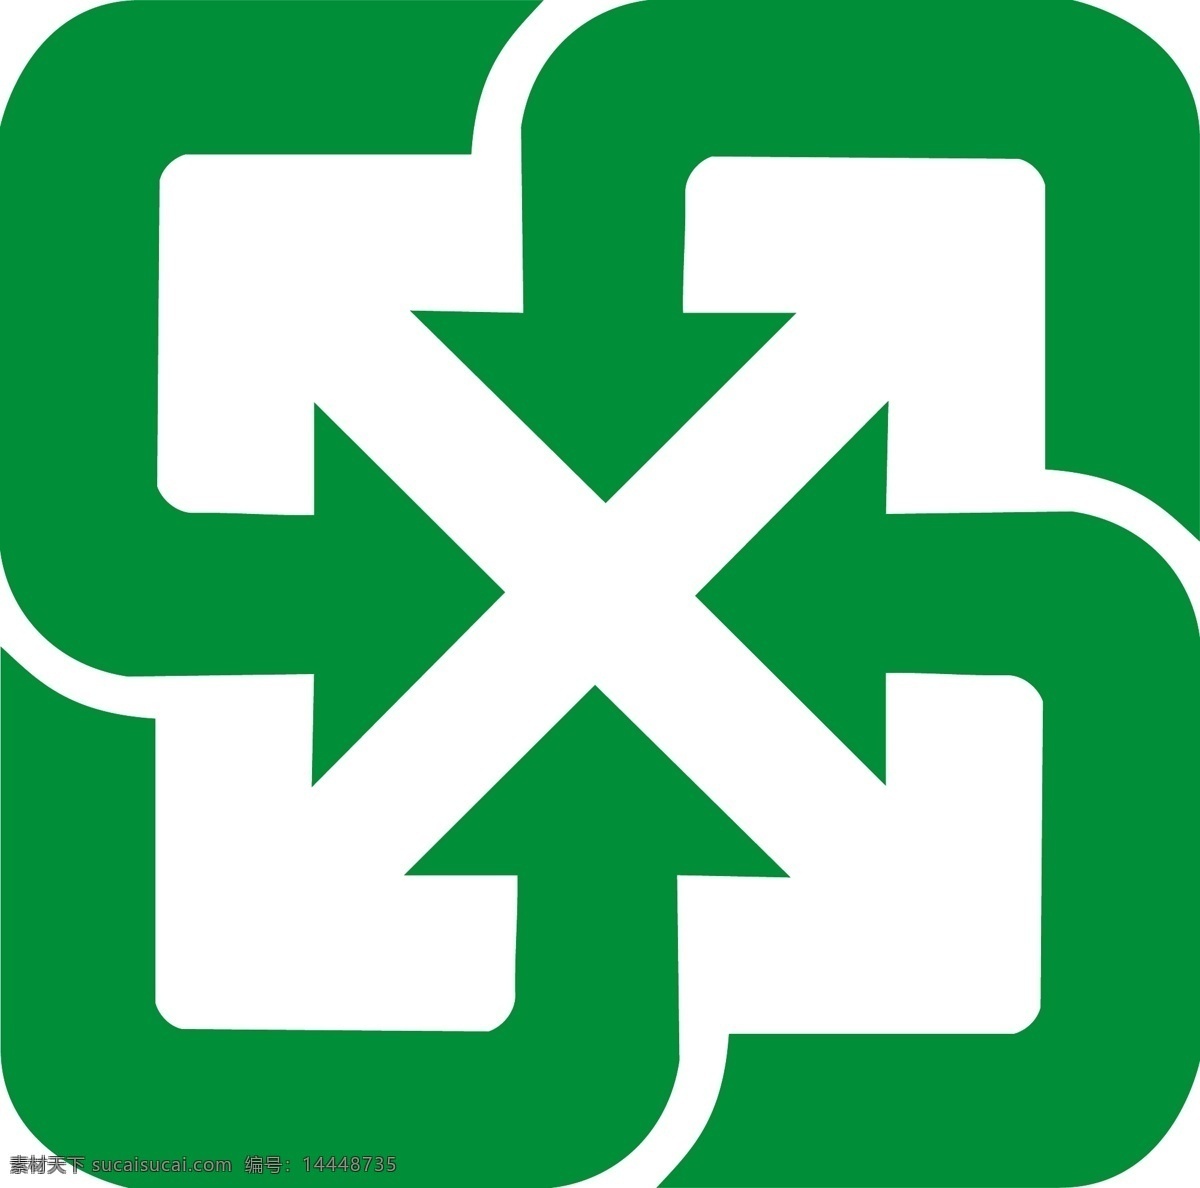 回收標章 回收 標章 綠色 環保 資源回收 标志图标 公共标识标志